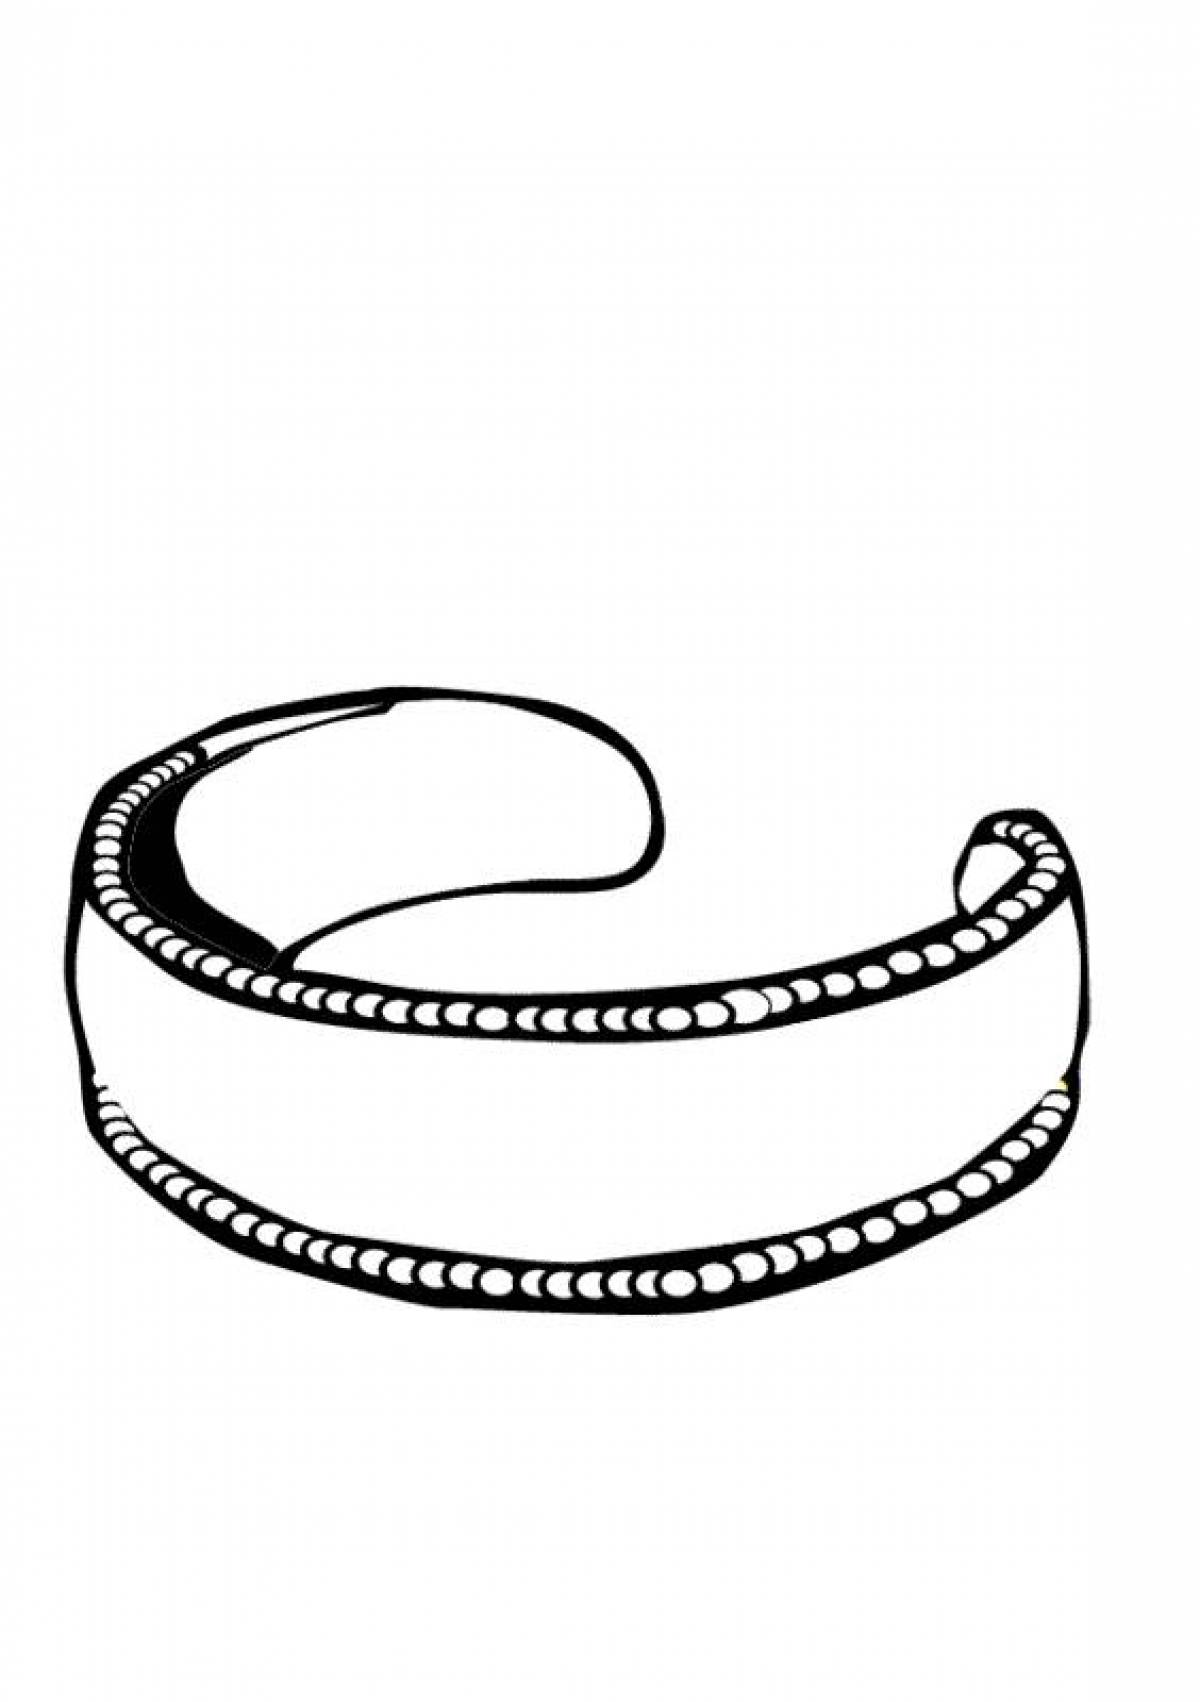 Figure bracelet